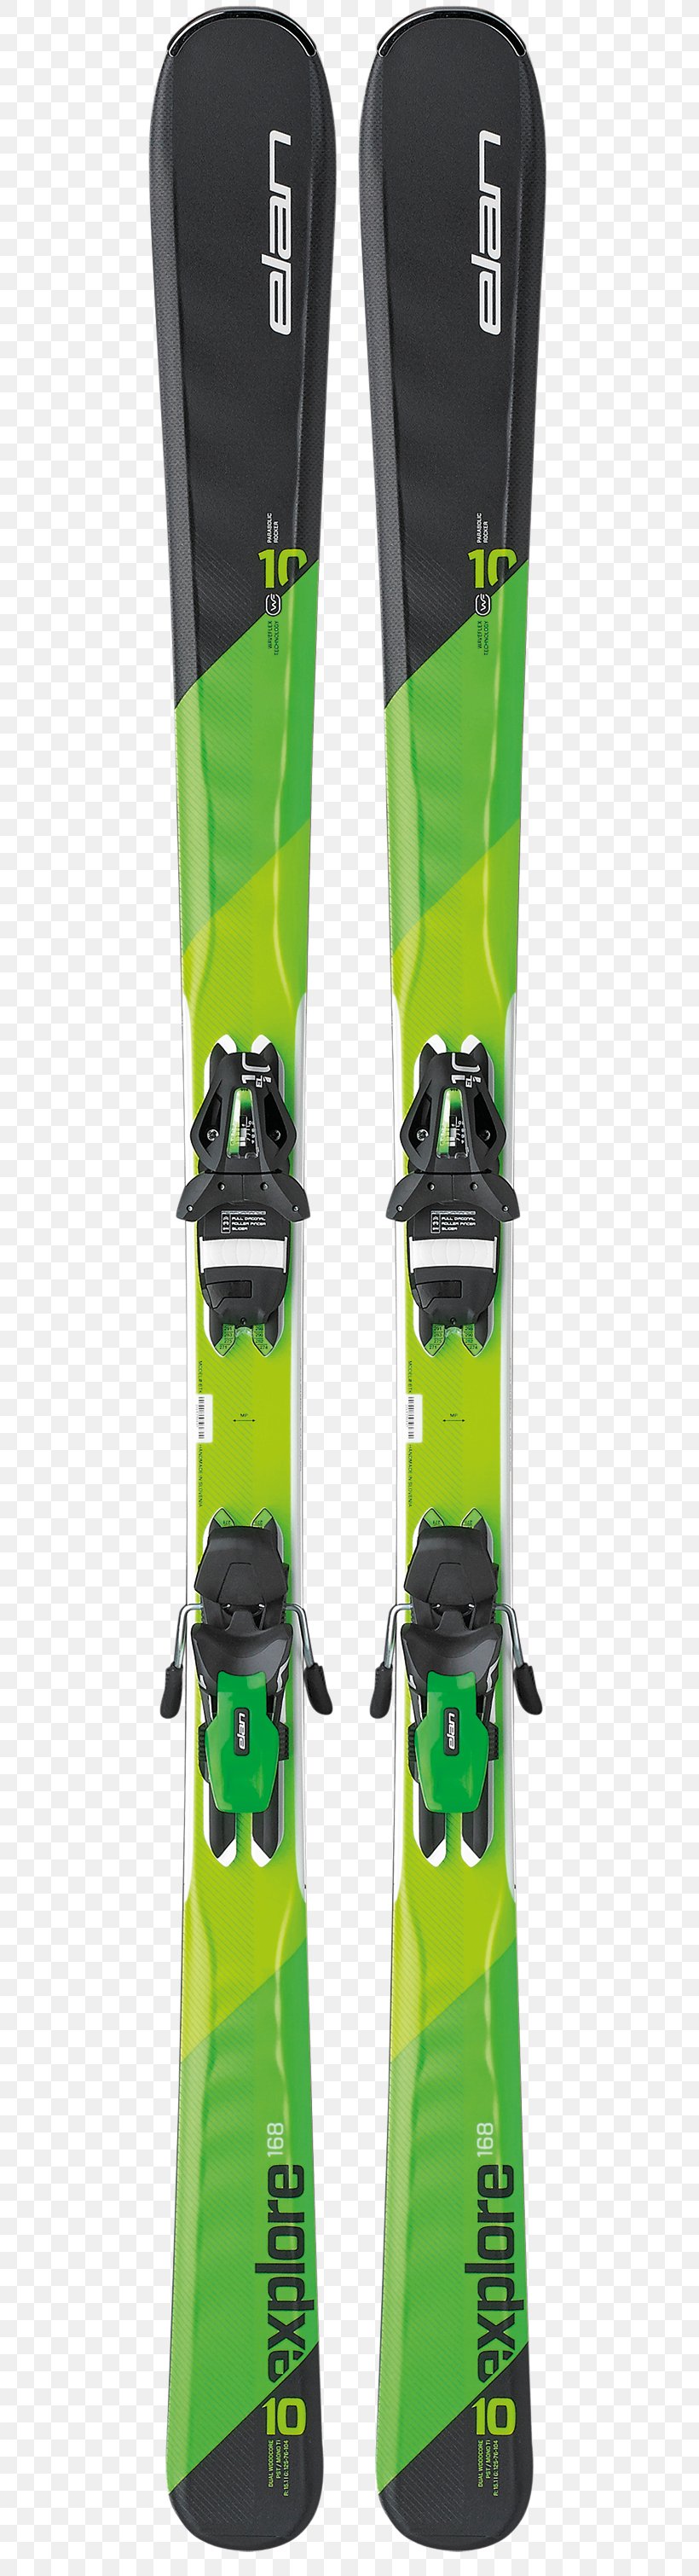 Ski Bindings Elan Skiing Alpine Ski, PNG, 500x3020px, Ski Bindings, Alpine Ski, Elan, Green, Look Download Free